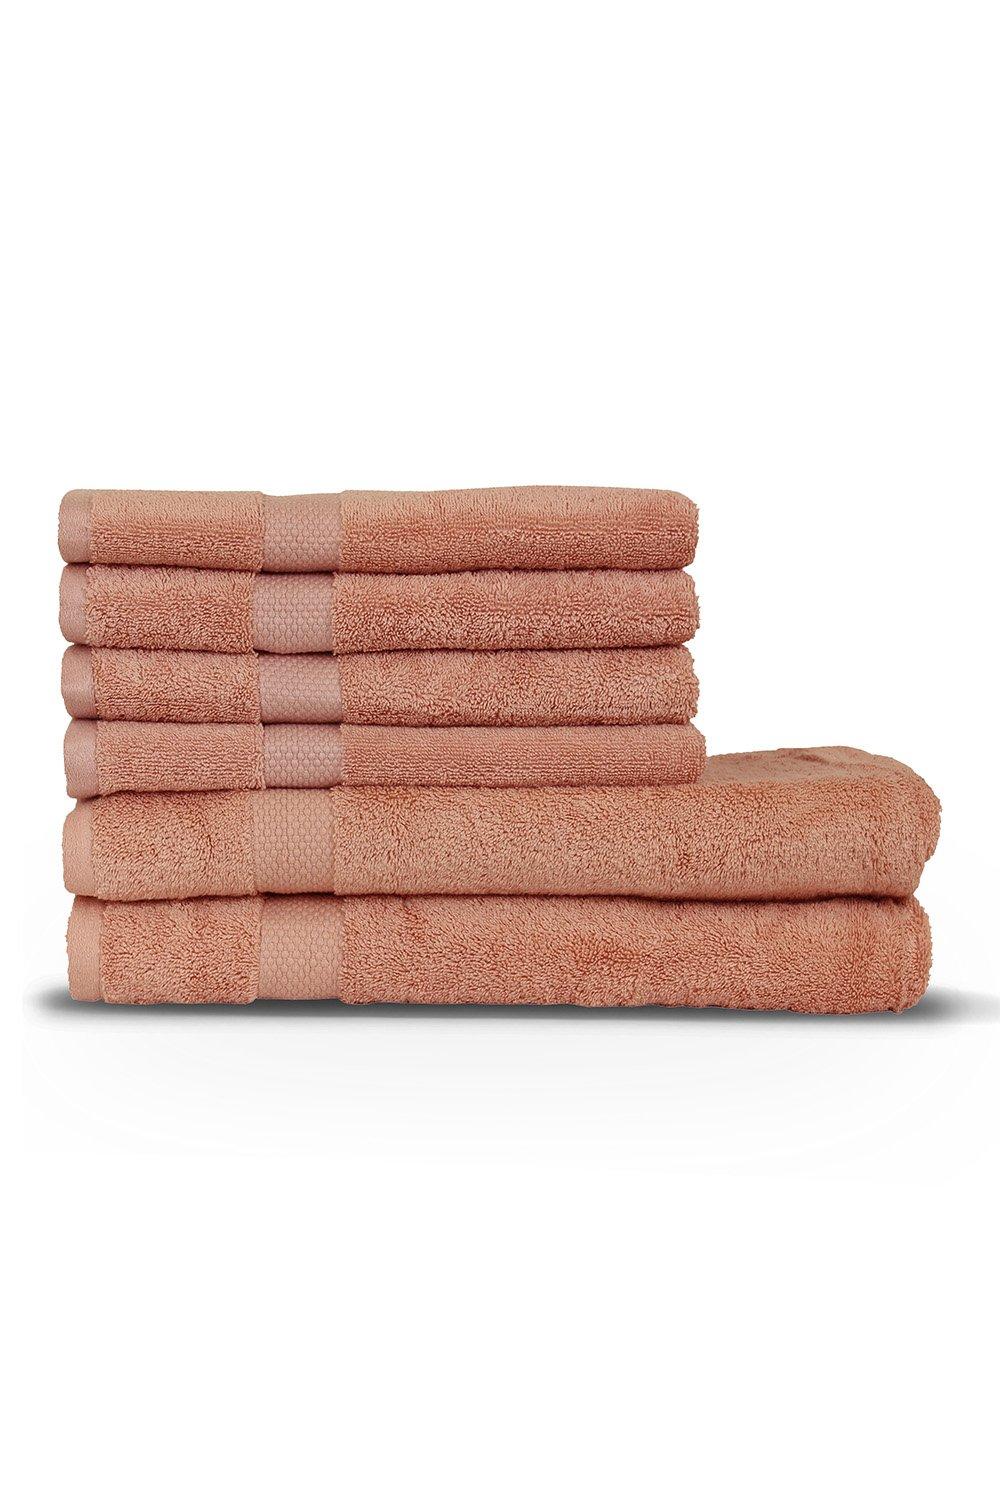 Loft Combed Cotton 6-Piece Hand/Bath Sheet Towel Bale